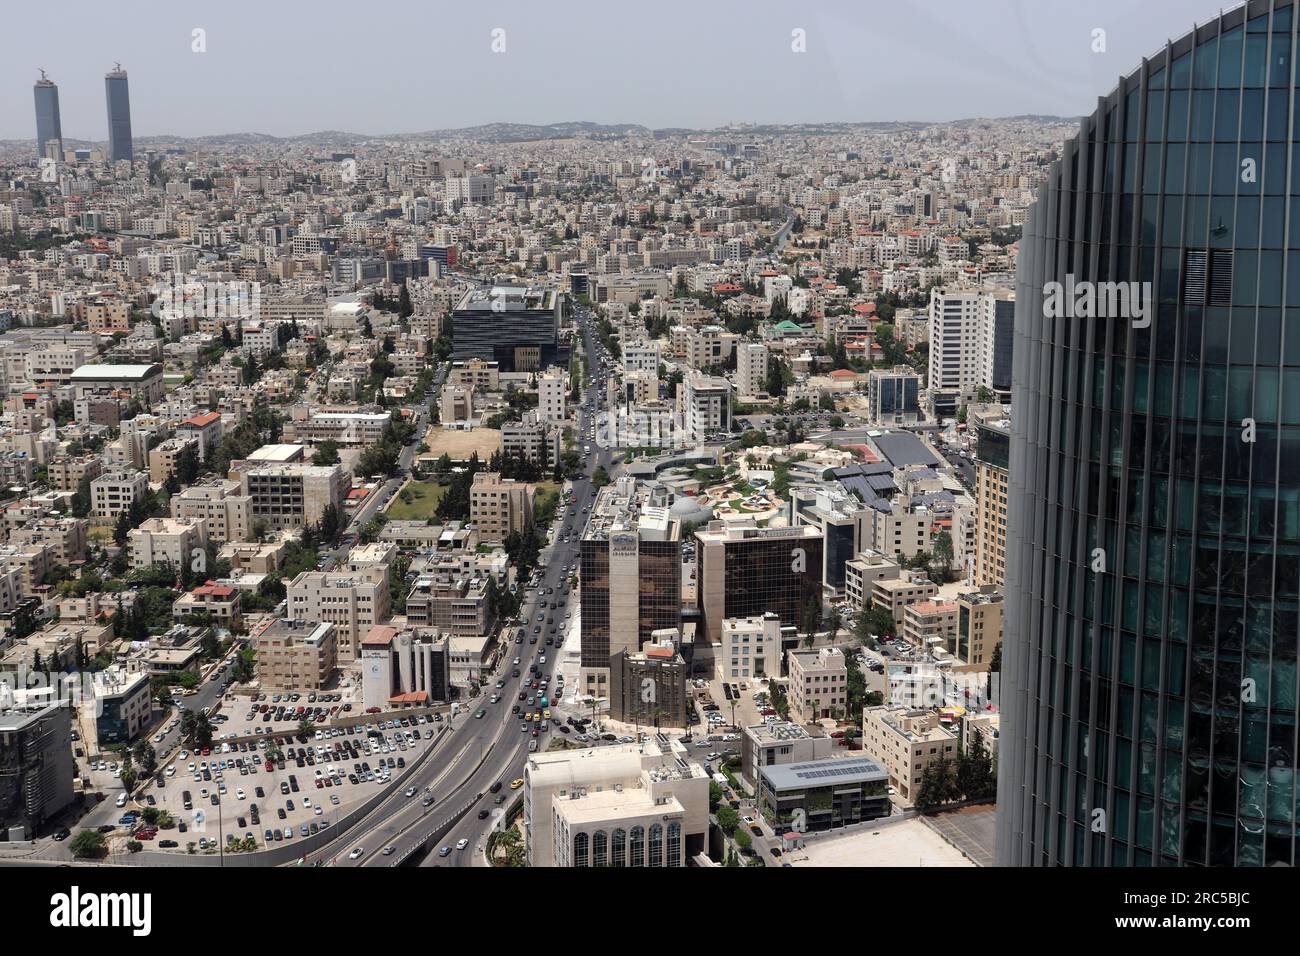 Amman, Jordanien : Amman-Türme, -Gebäude und -Straßen in der Hauptstadt (wunderschöne arabische muslimische Stadt) Stockfoto